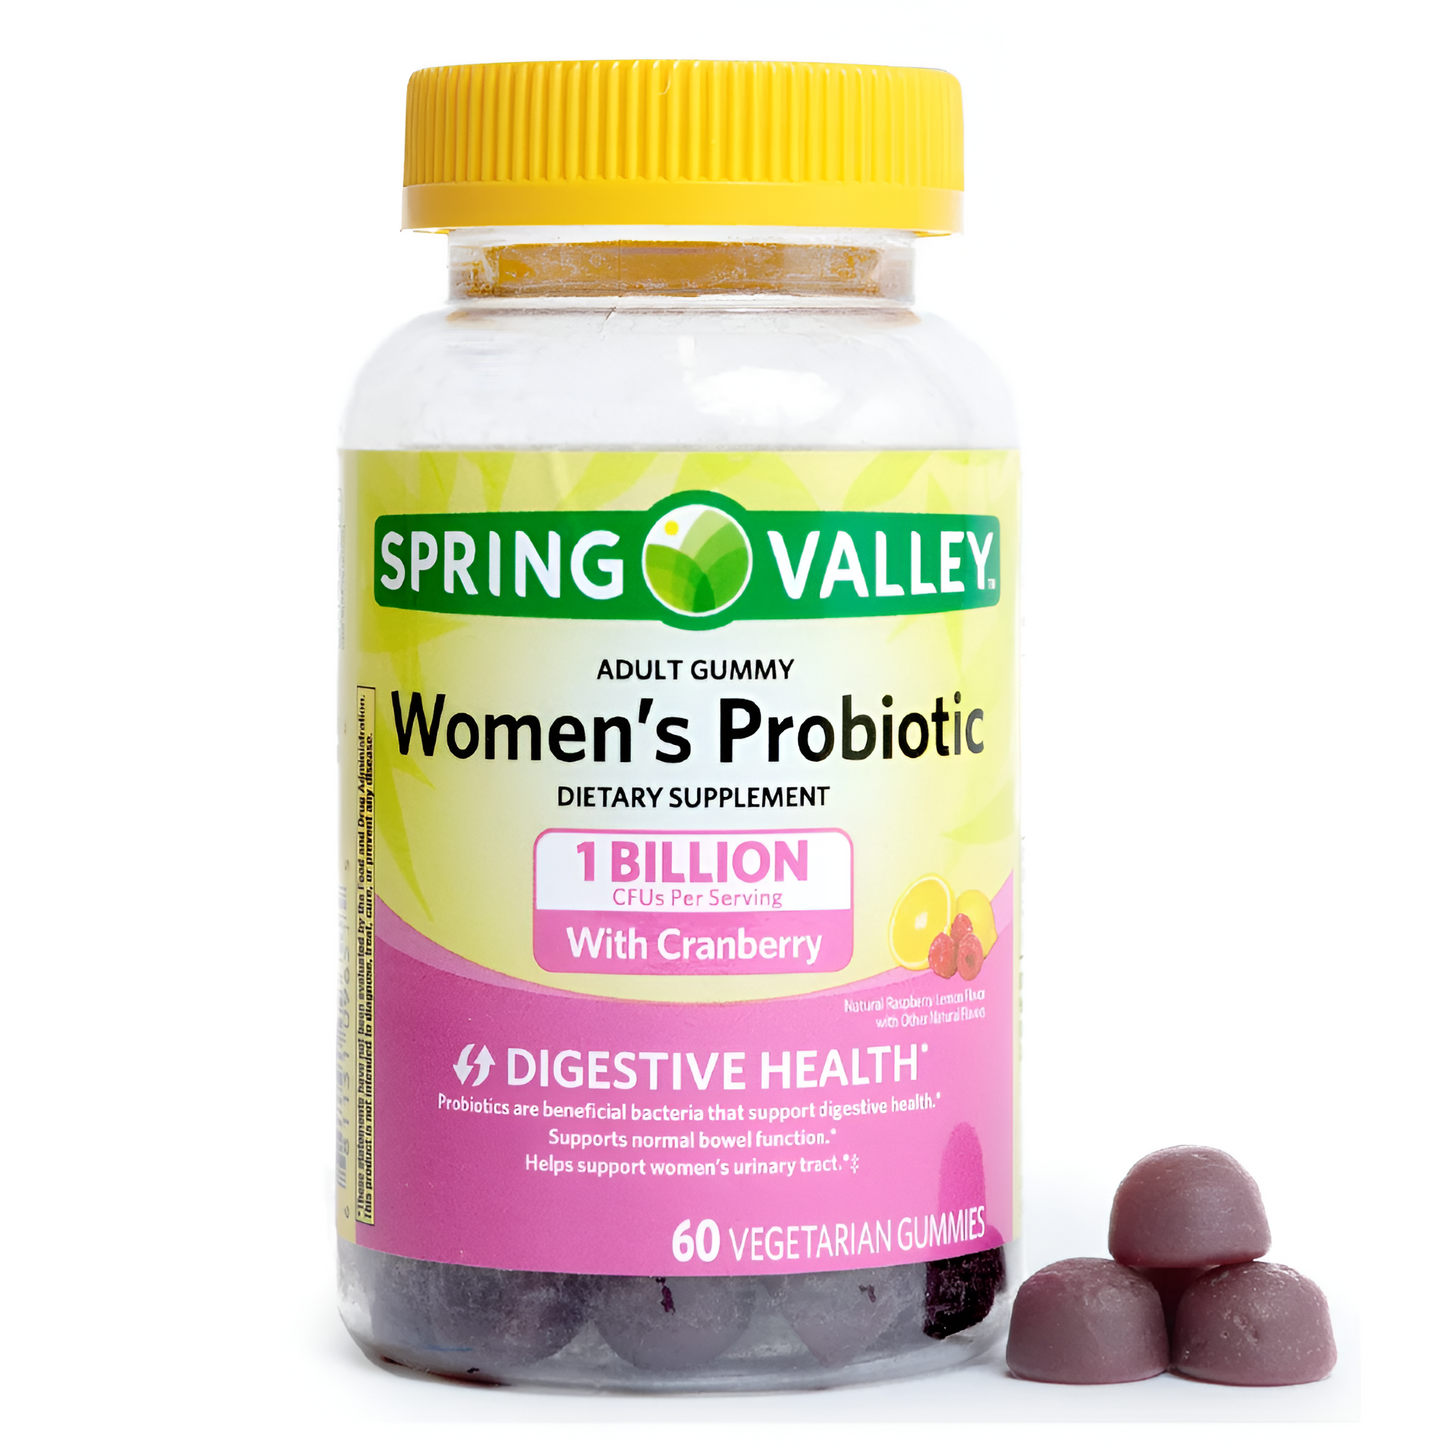 Spring Valley Suplemento probiótico para mujeres, 60 gomitas